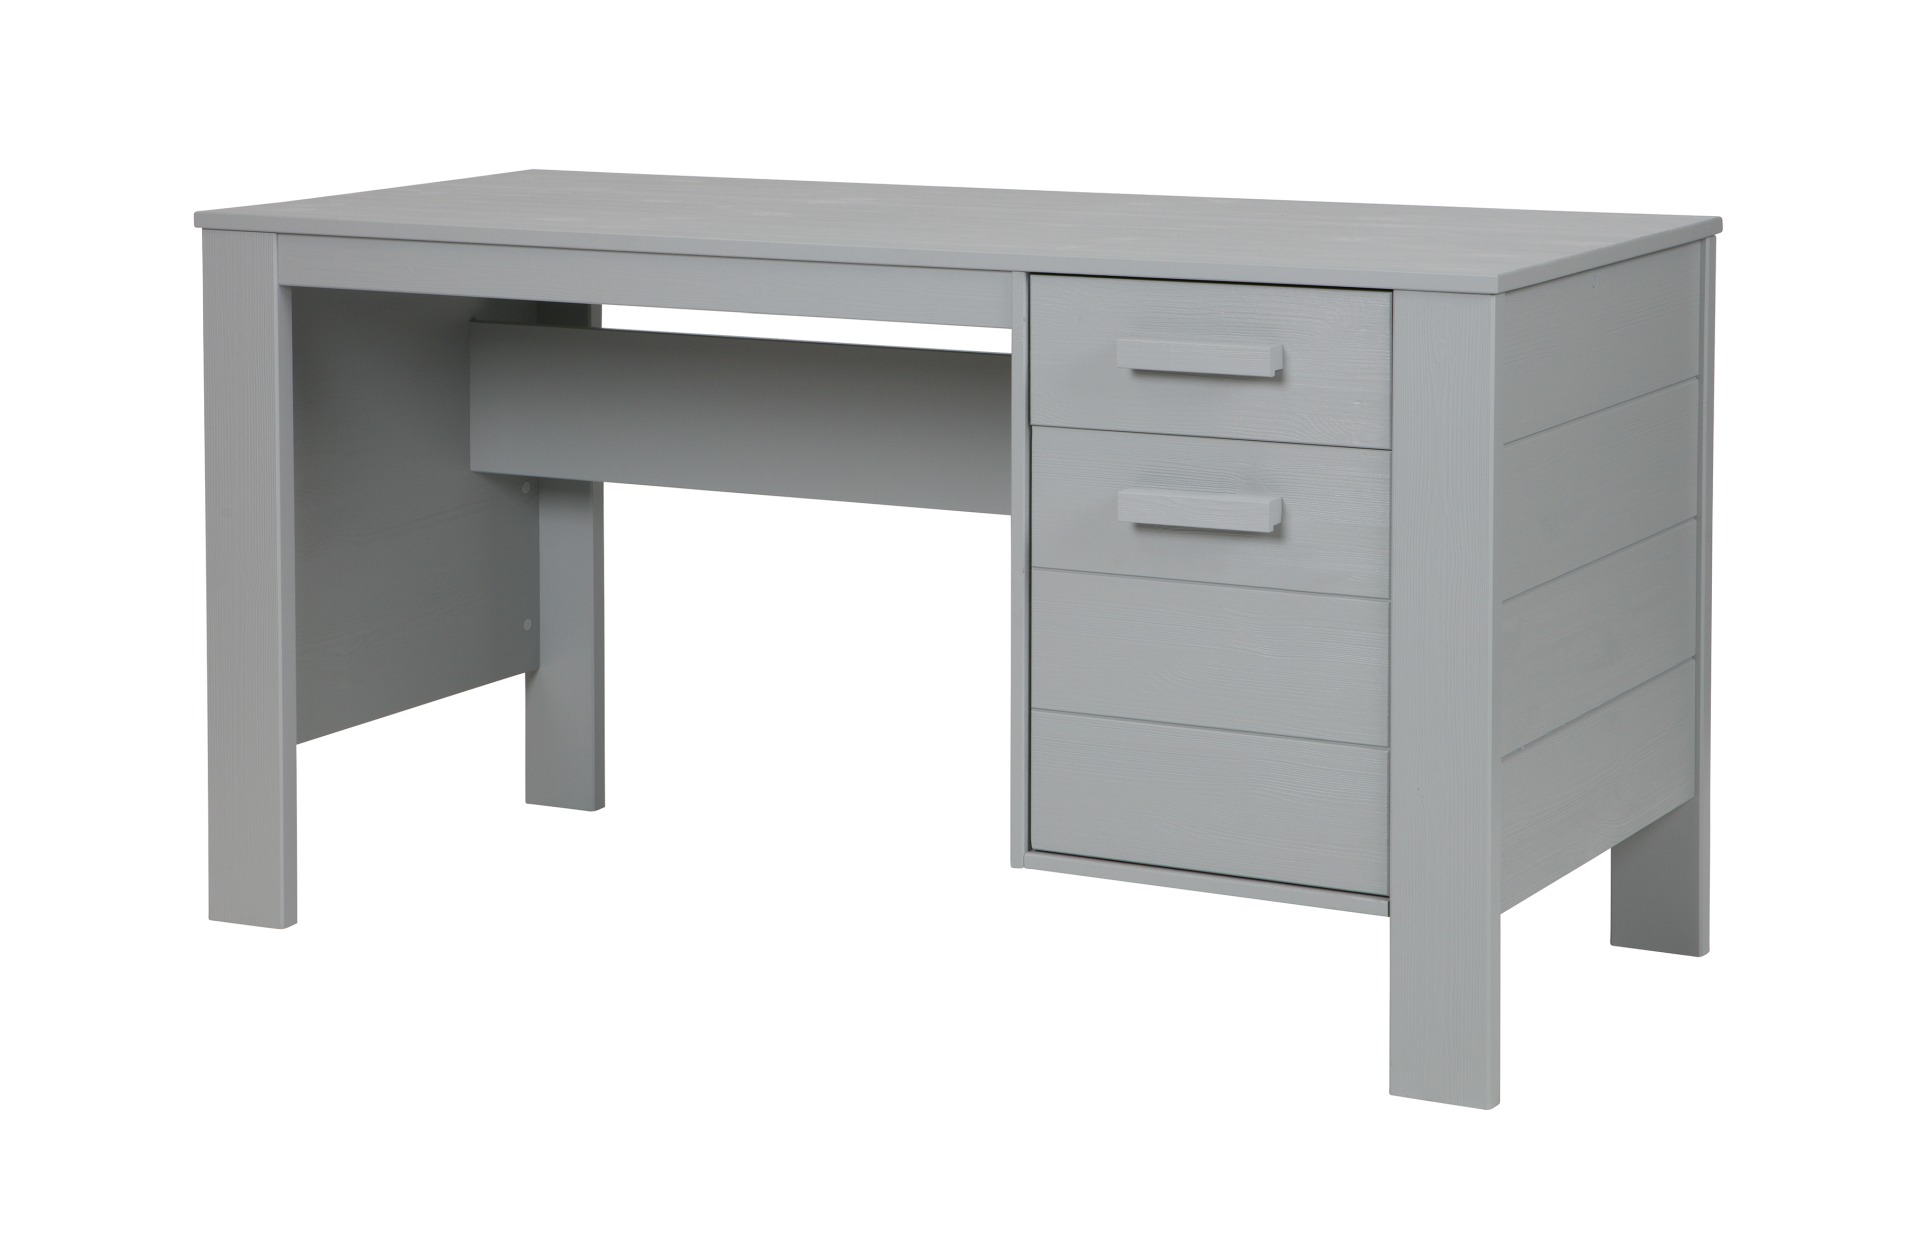 Der Schreibtisch Dennis wurde aus Kiefernholz gefertigt und besitzt einen hellgrauen Farbton. Der Tisch verfügt über eine Schublade und eine Tür für Stauraum.